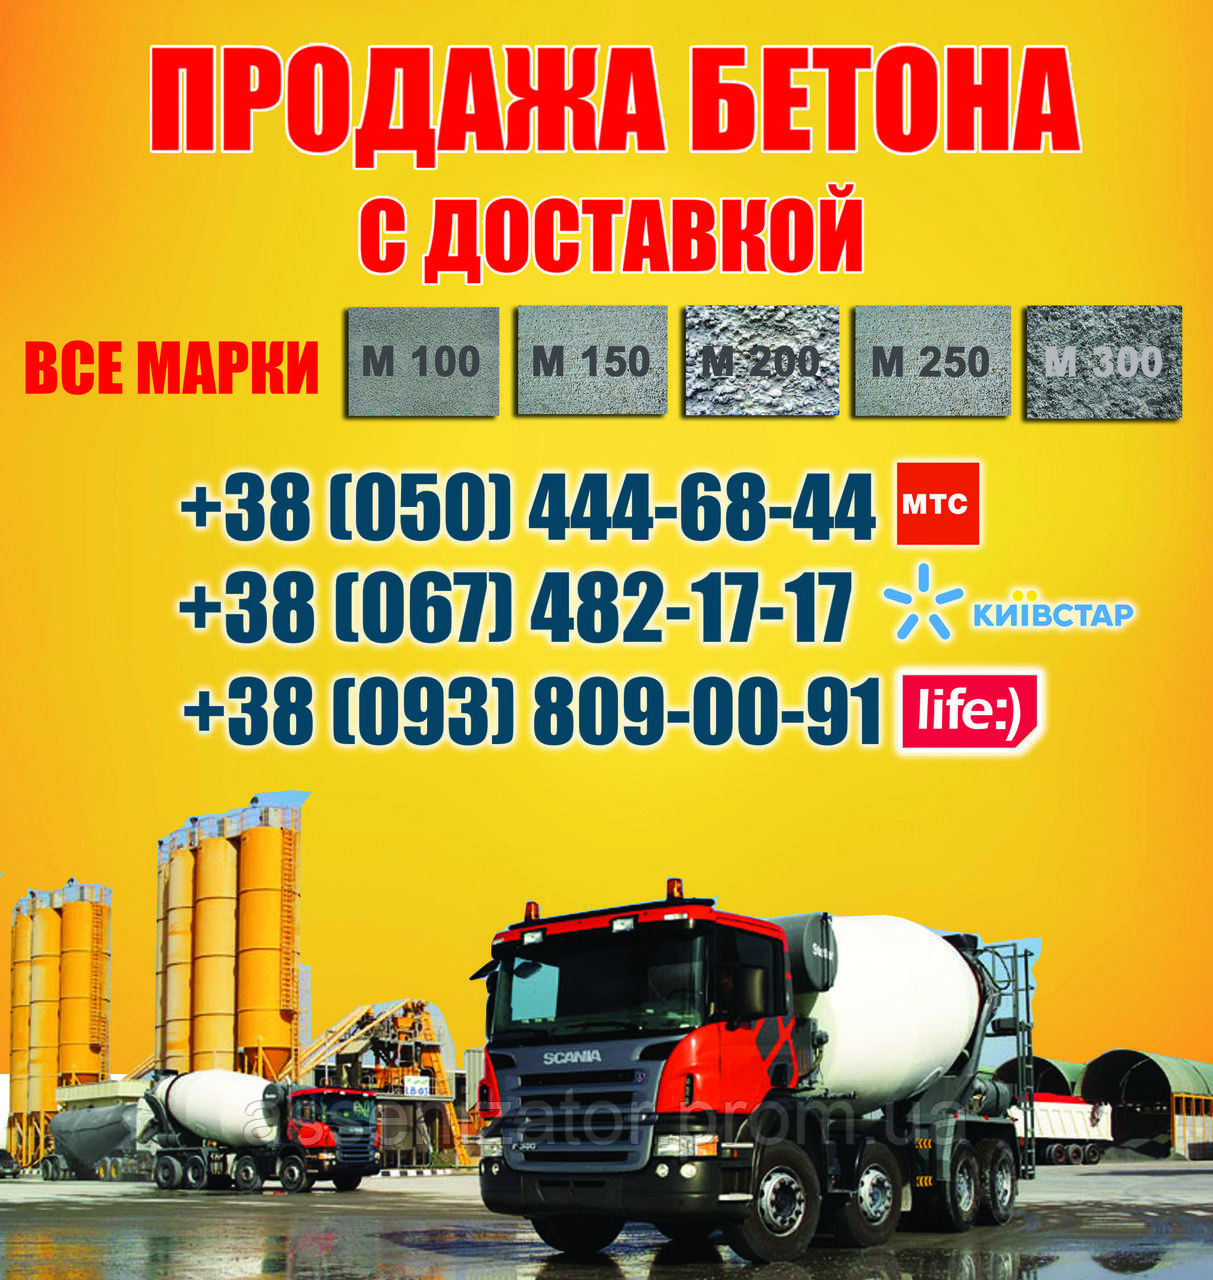 Заказать бетон с доставкой цена московская область накладная на бетон